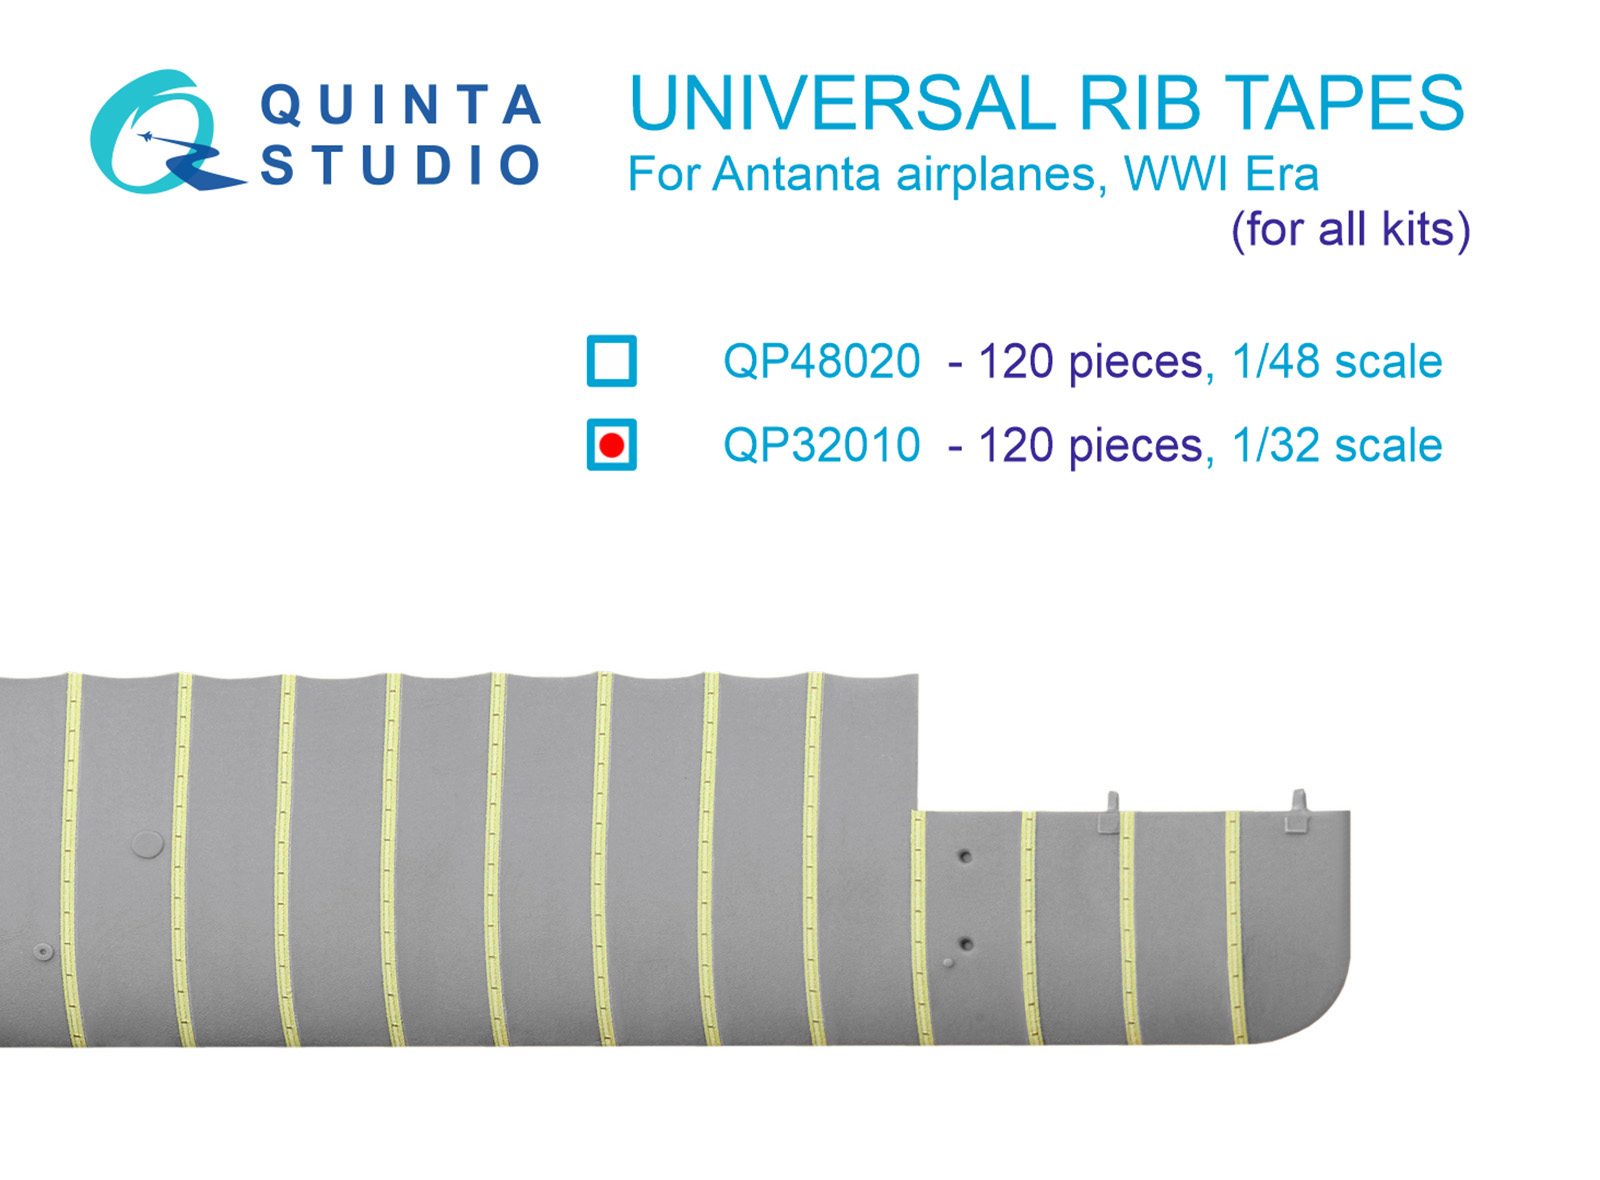 Универсальные киперные ленты Quinta Studio 1/32 страны Антанты ПМВ после ПМВ QP32010